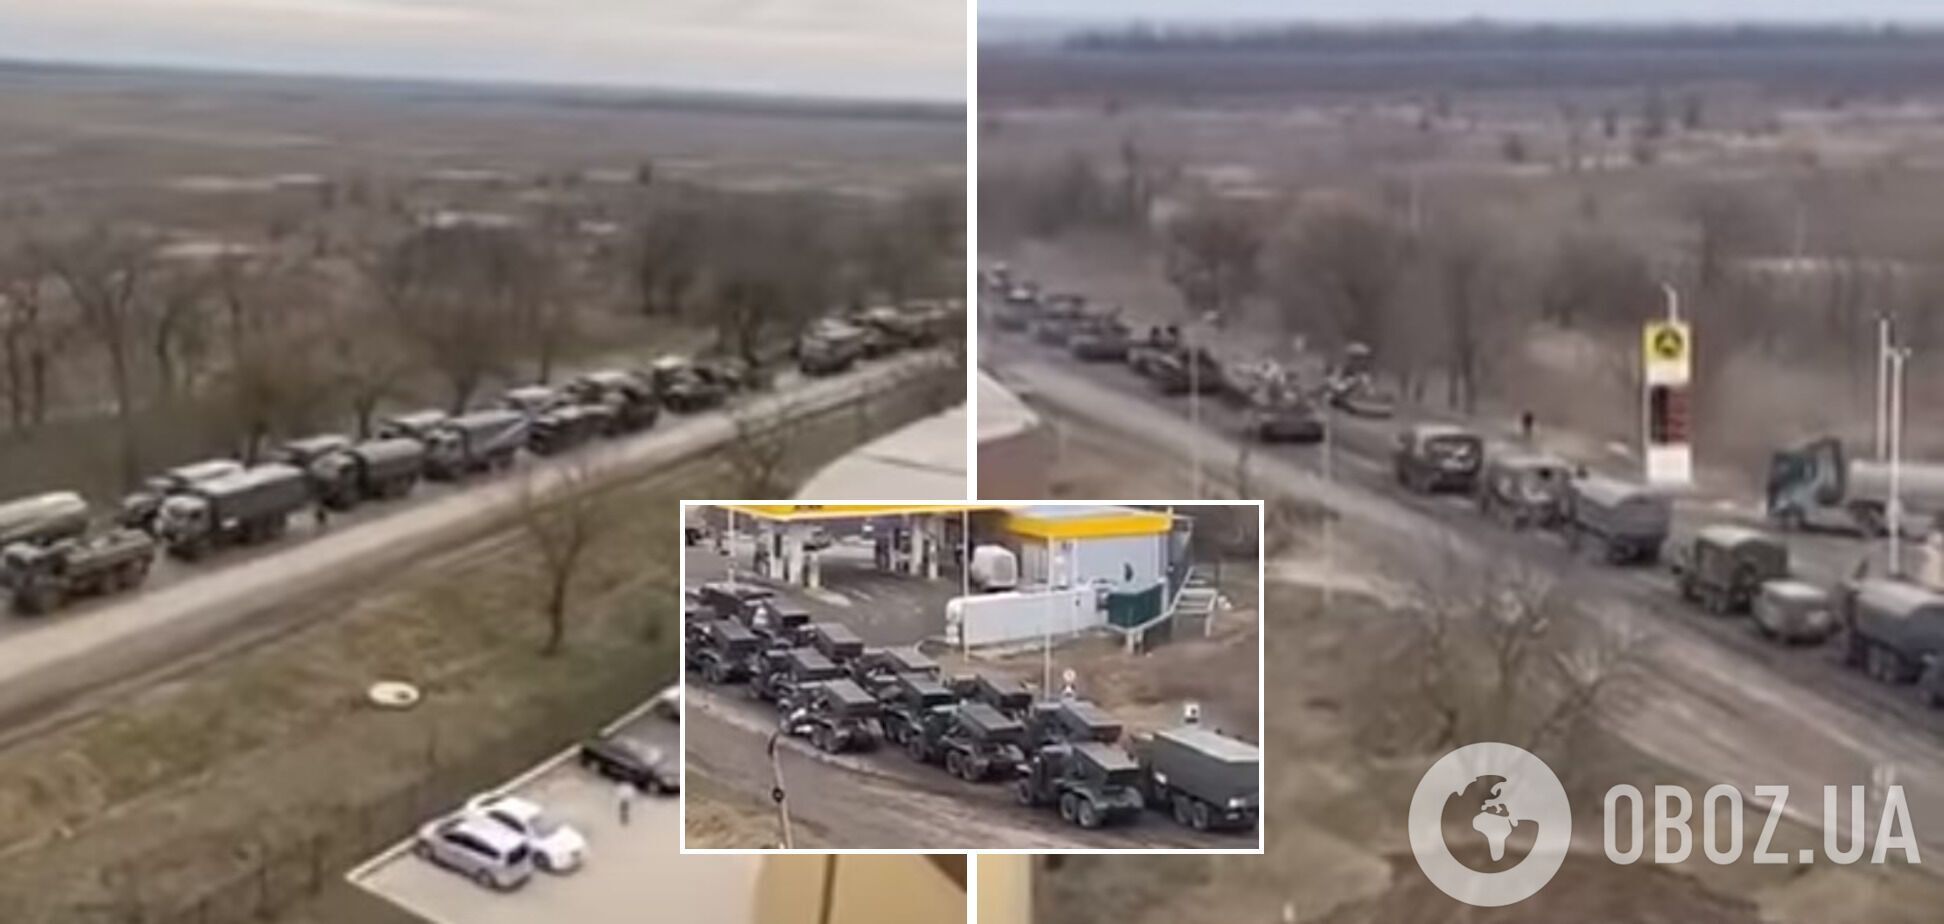 Колонна военной техники РФ, которая приближалась в Украину из Крыма